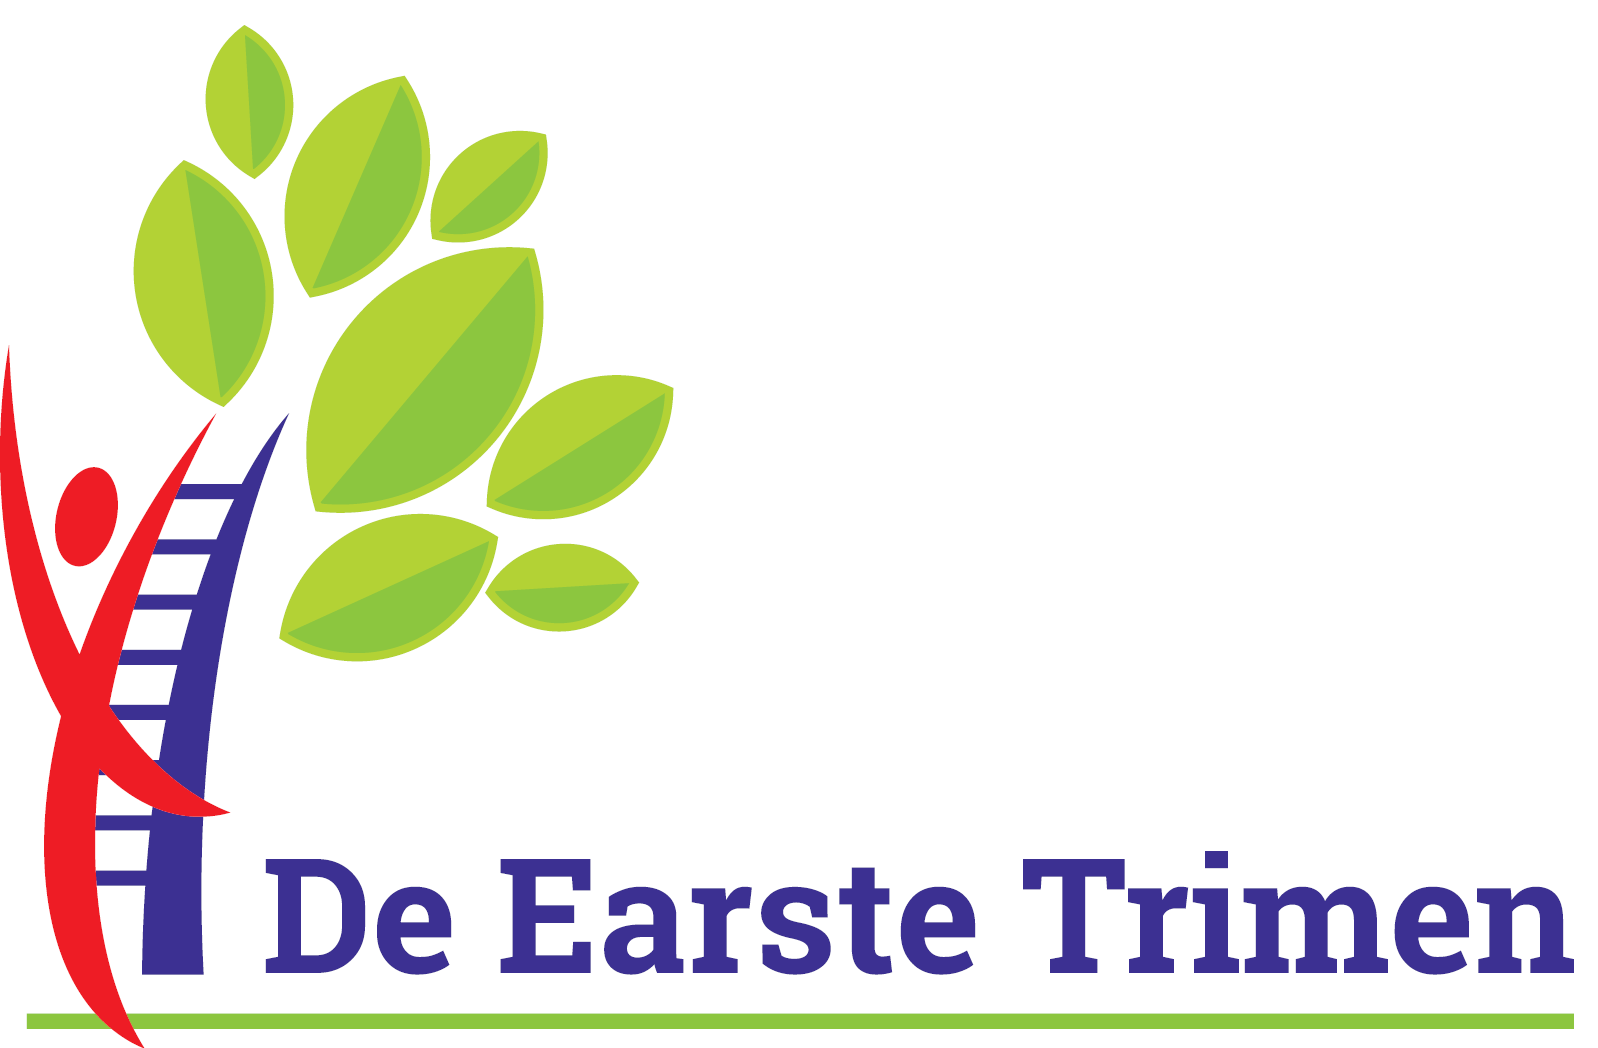 De Earste Trimen logo